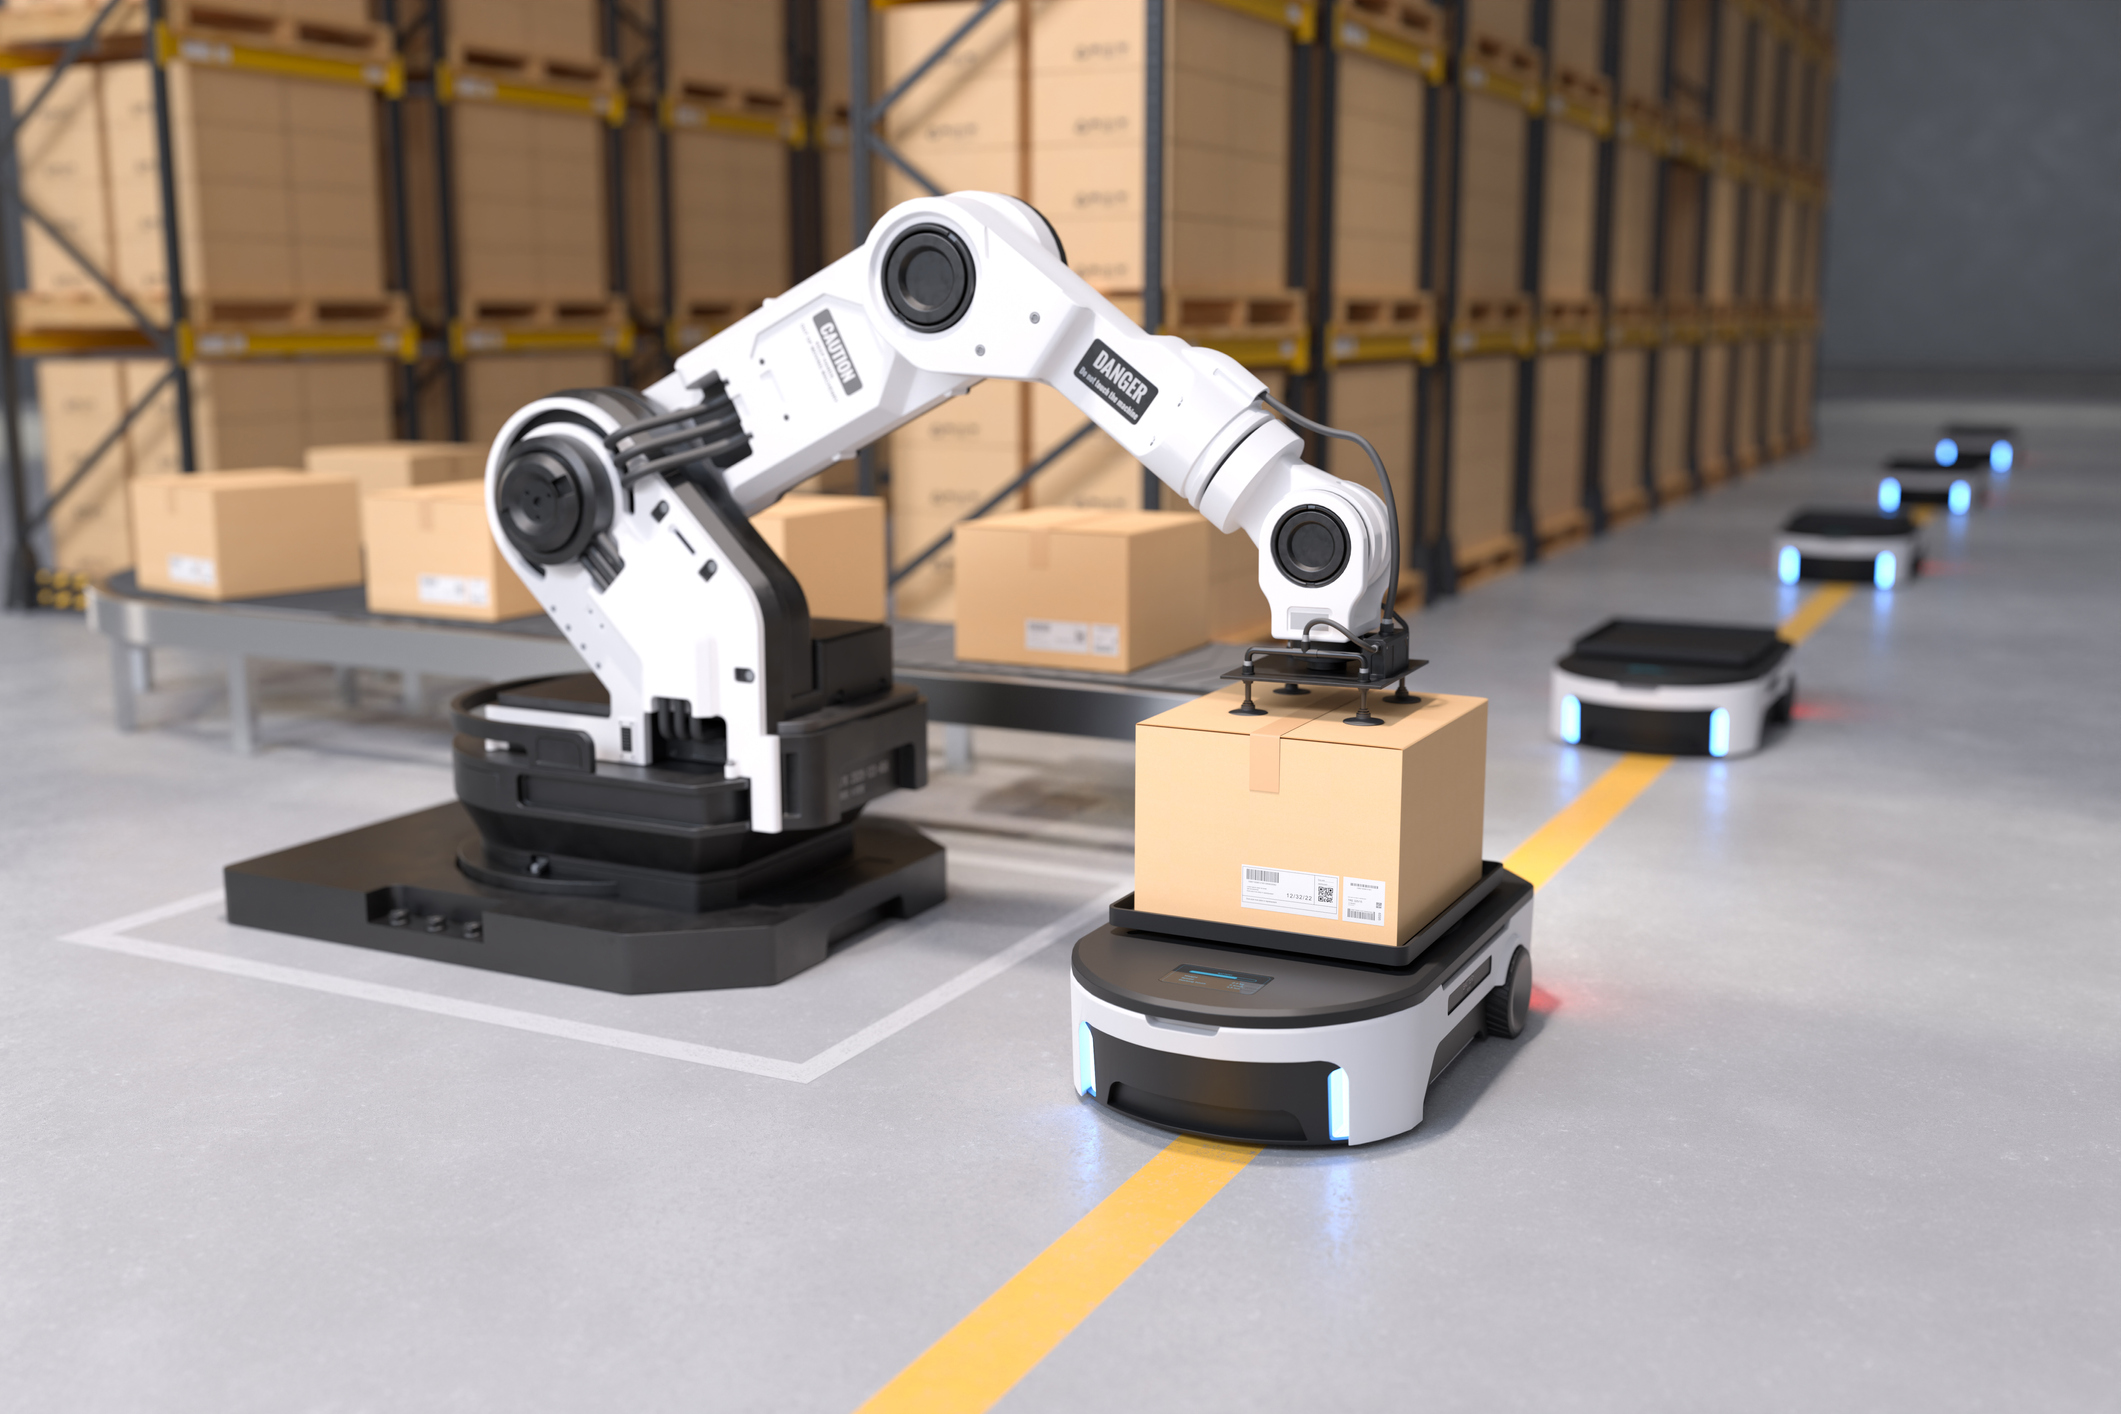 Robots in logistics